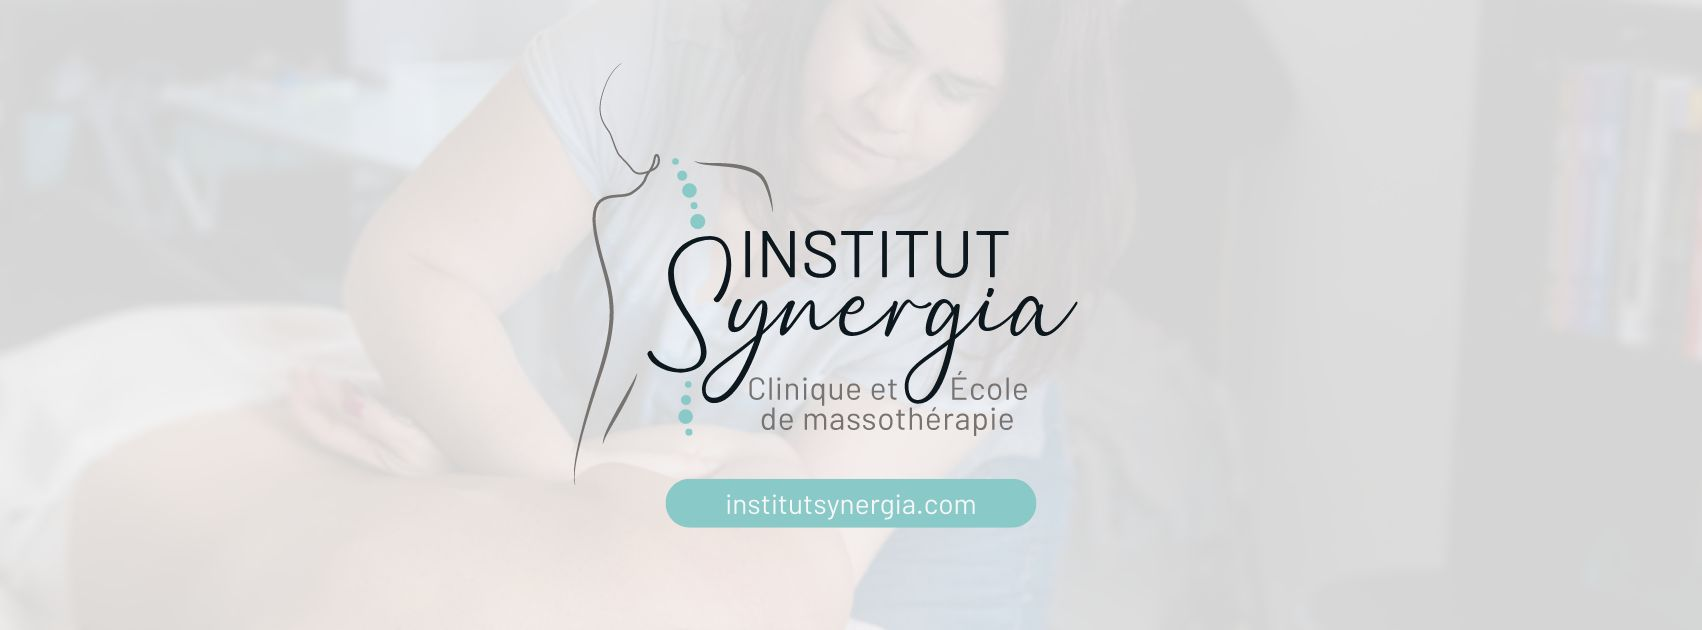 Institut Synergia - Clinique et École de Massothérapie